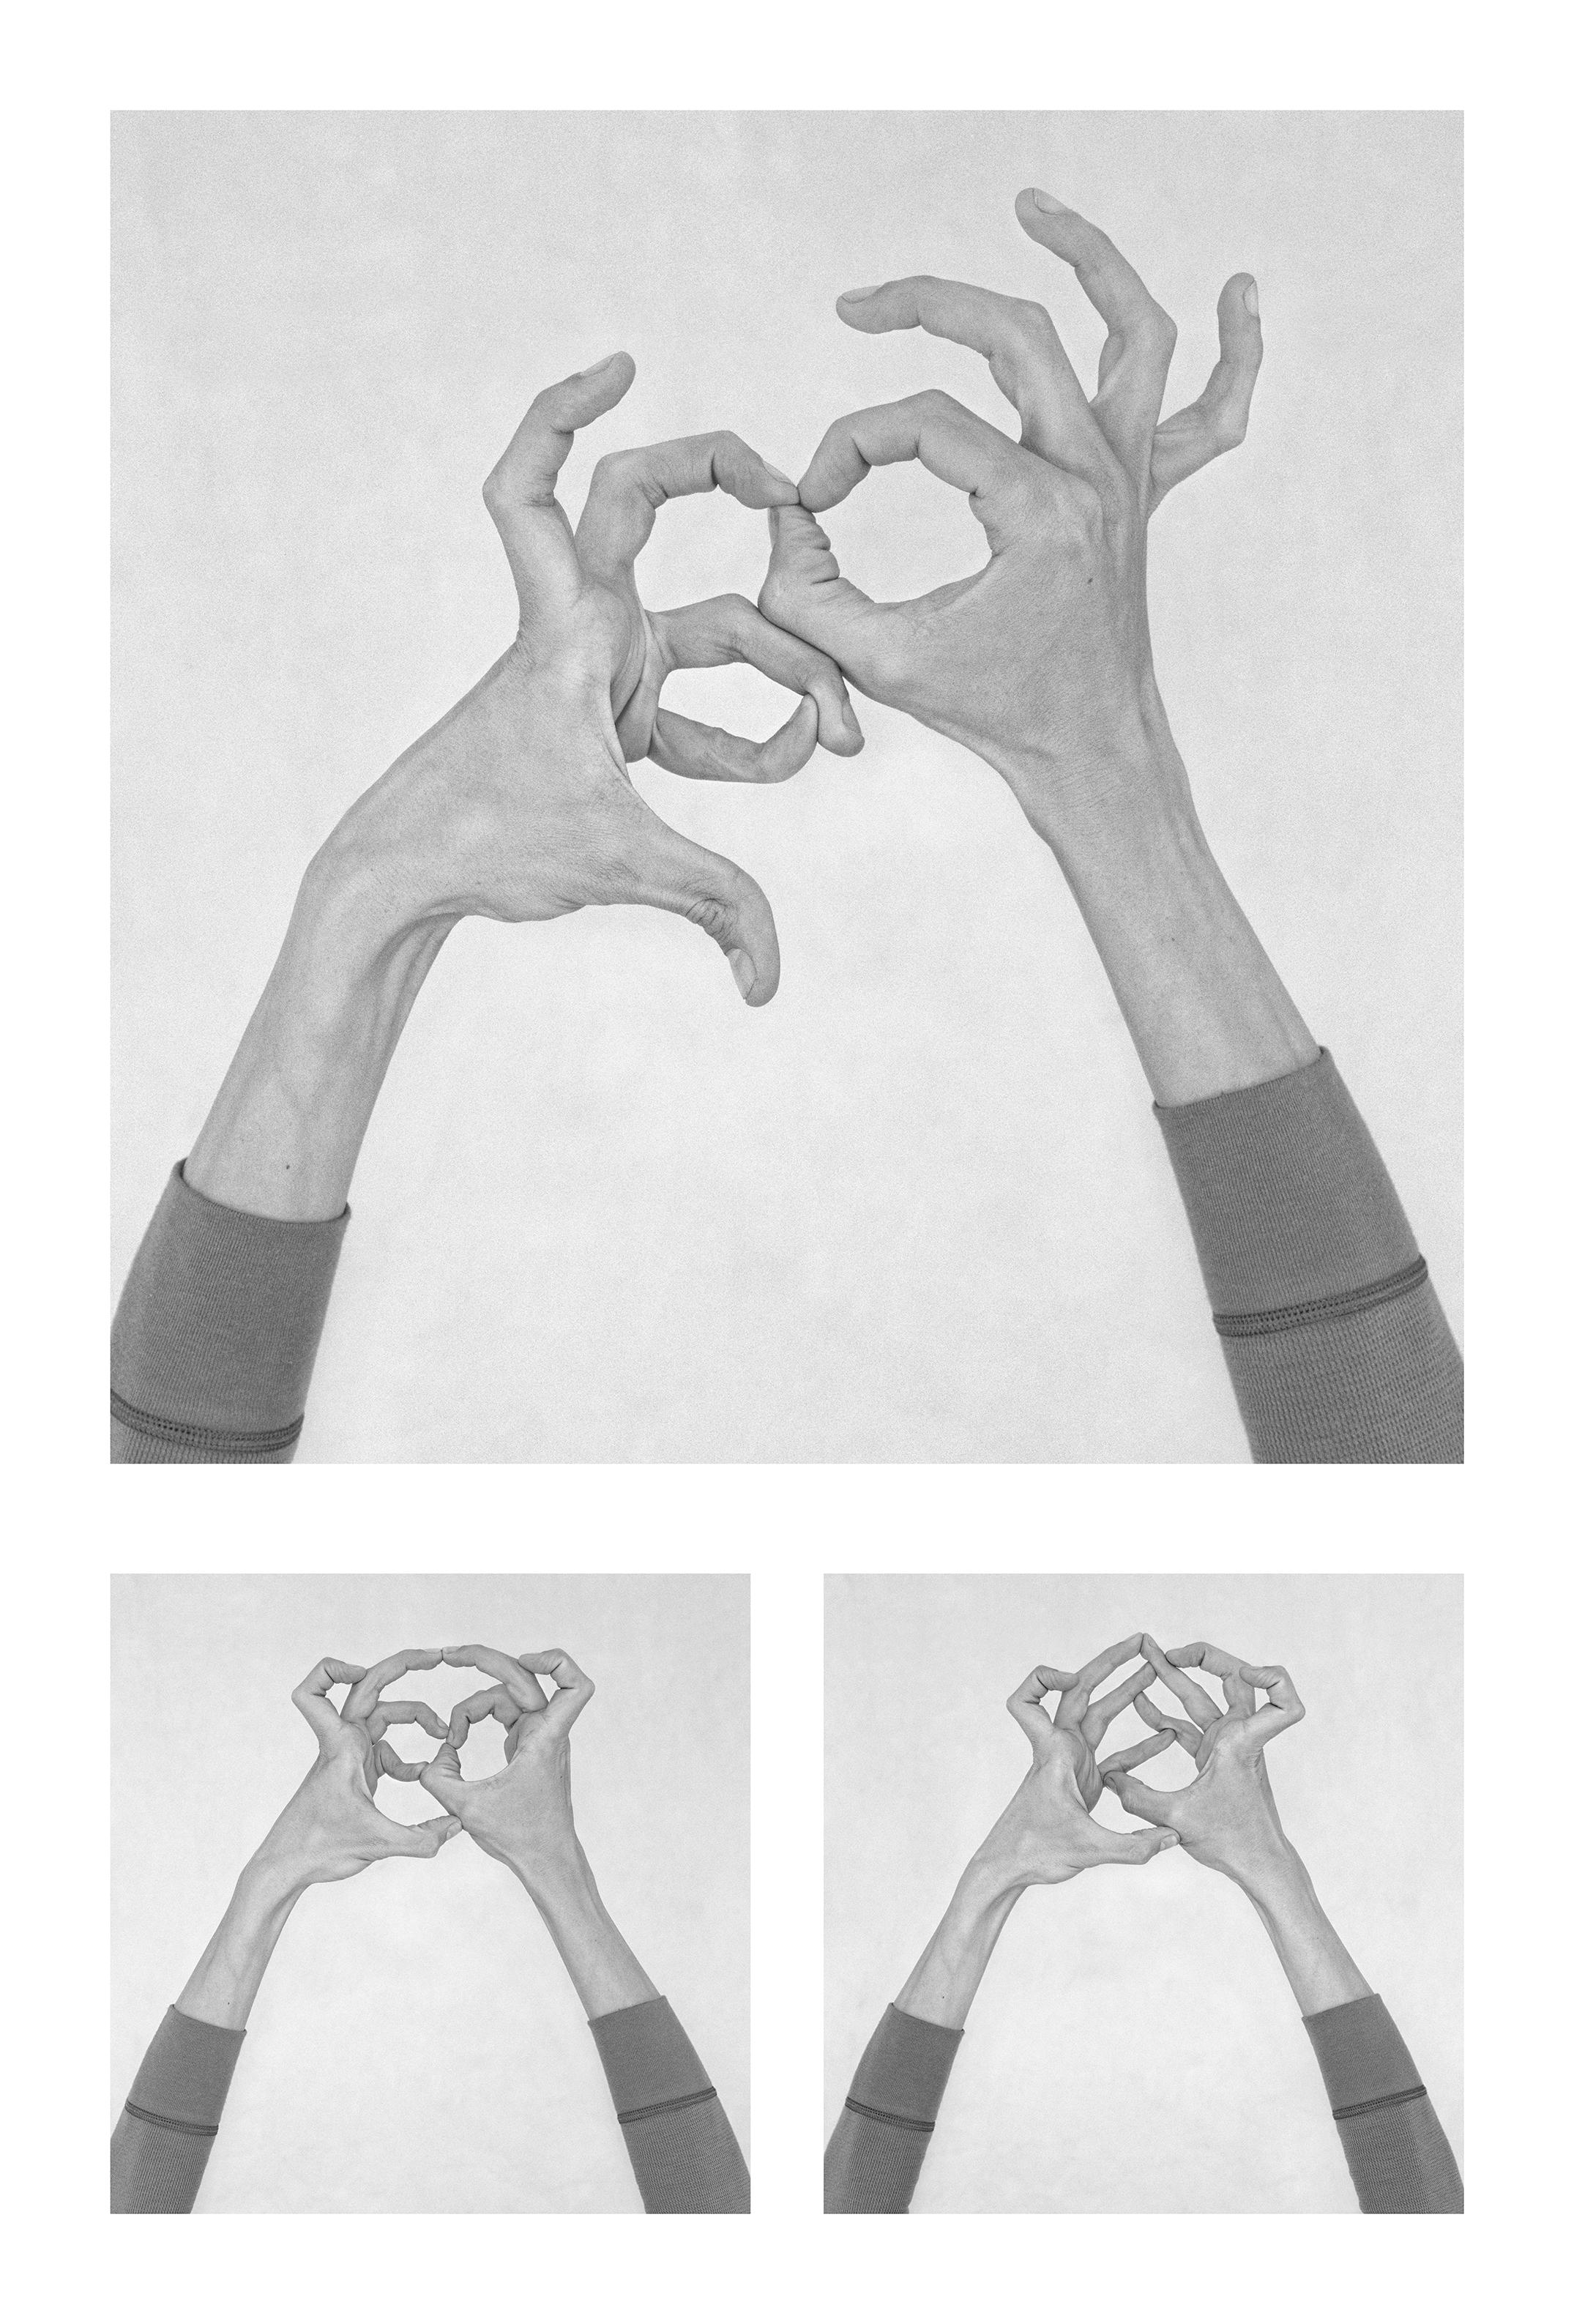 Nico Baixas / Gos-com-fuig Black and White Photograph - Untitled X, Untitled XXIX, and Untitled XXXIX, Hands. Triptych